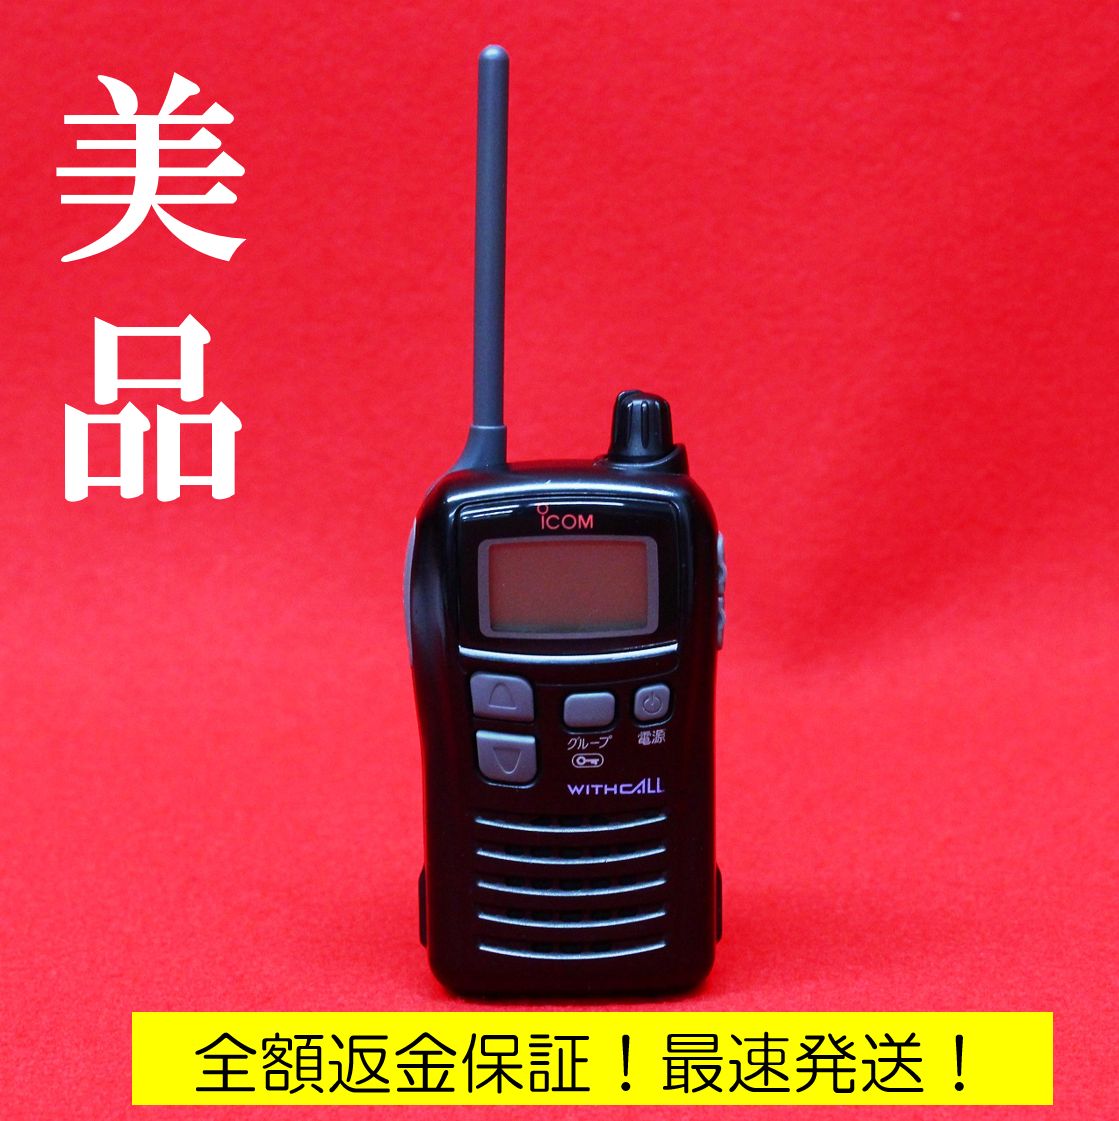 正規品 アマチュア無線機 ICOM アマチュア無線機 美品 アマチュア無線